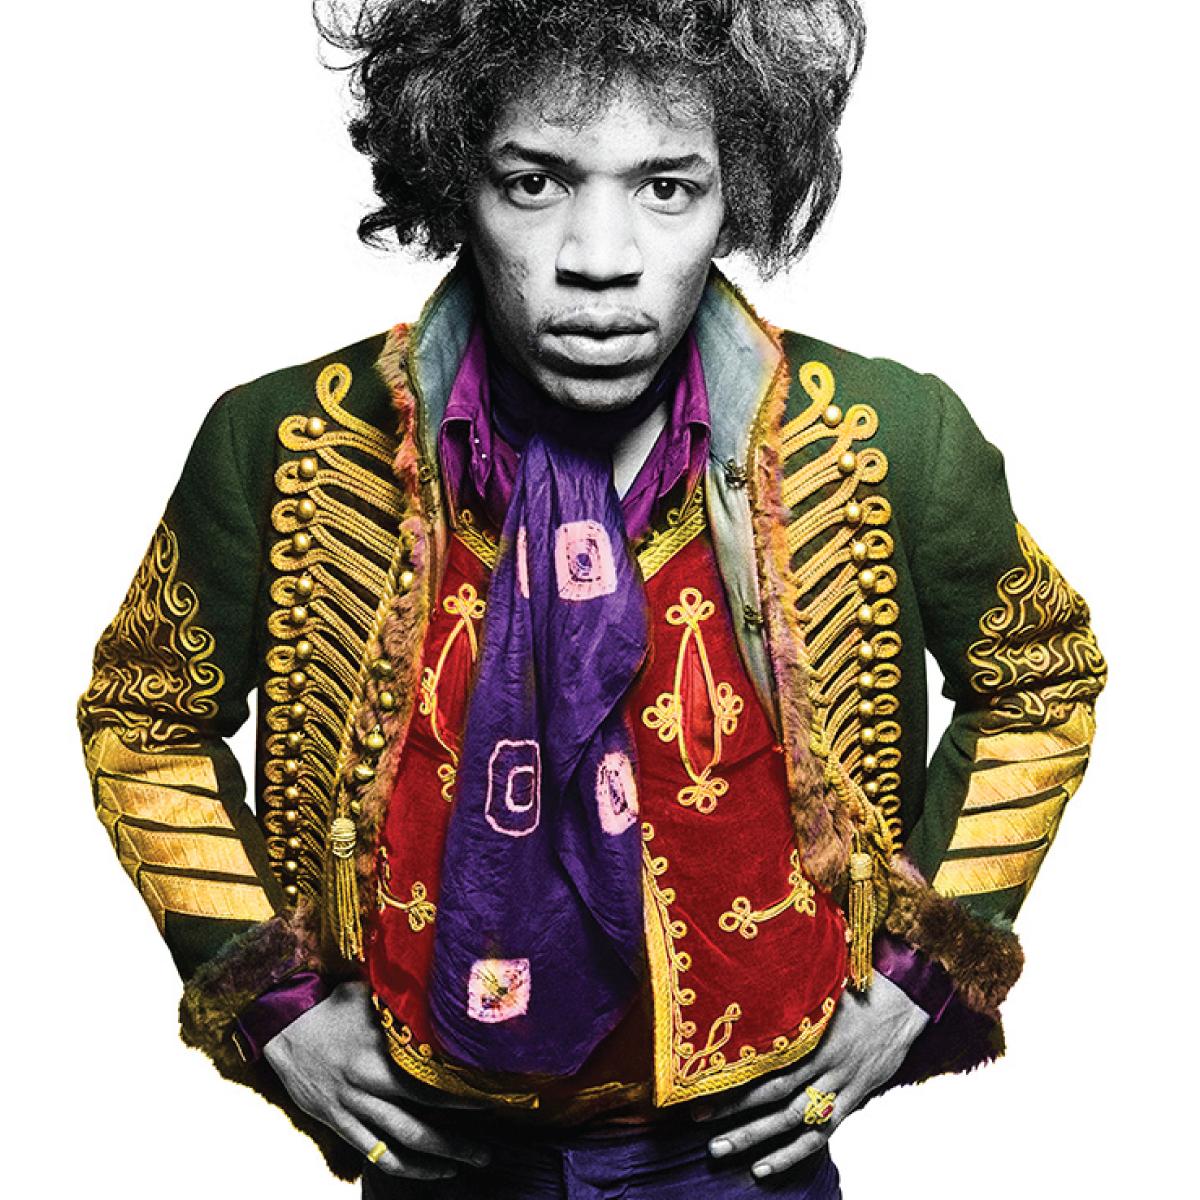 Jimi Hendrix "Classic Color" 1967 par Gered Mankovitz

Disponible dans les formats suivants, signé et numéroté par Gered Mankowitz.

16x20" - Edition 50
20x24" - Edition 50
30x40" - Edition 25
50x53" - Edition 24
